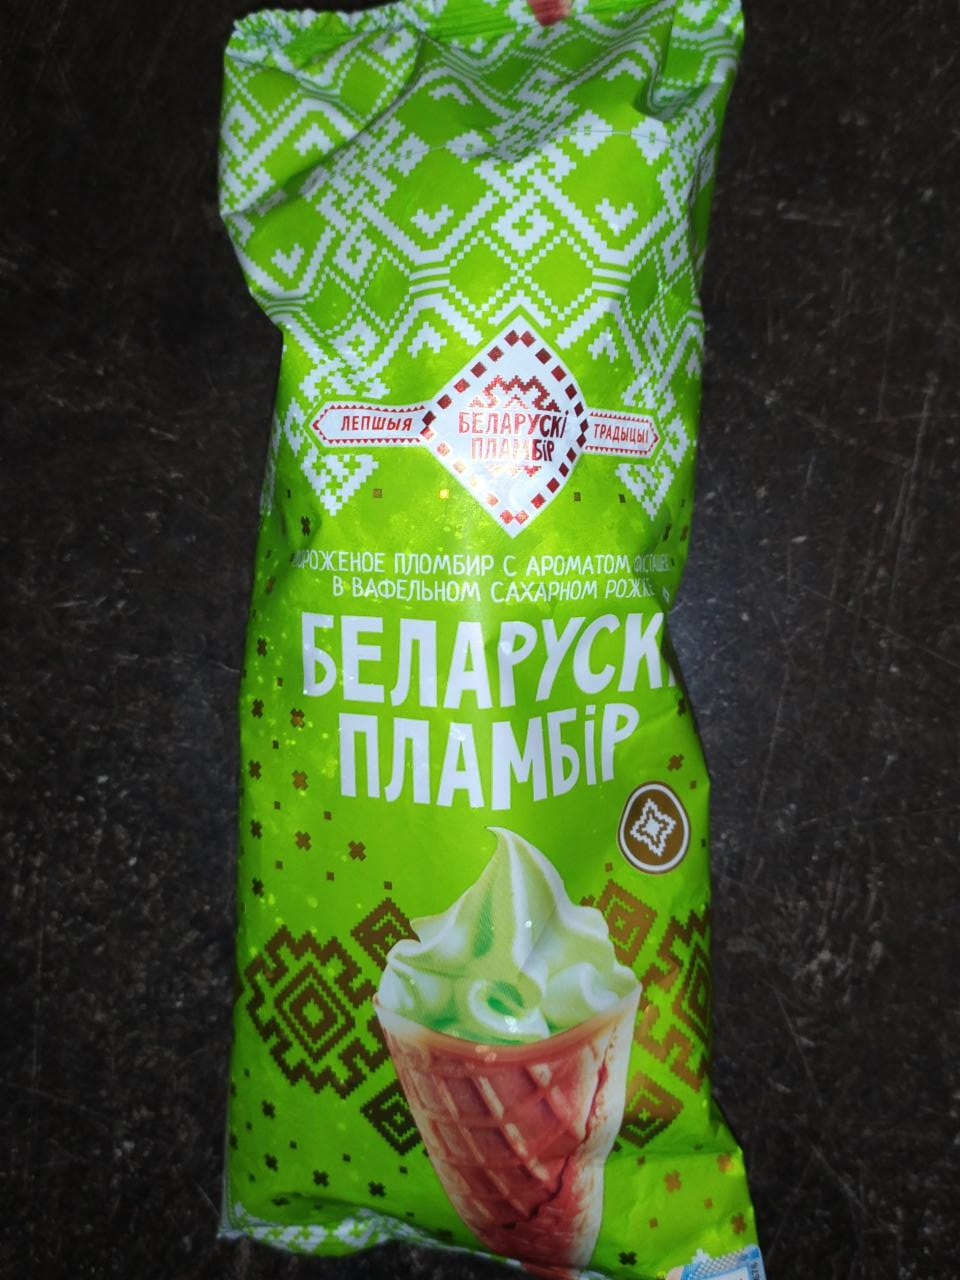 Фото - мороженое пломбир с ароматом фисташек в вафельном сахарном рожке Беларуски пламбир